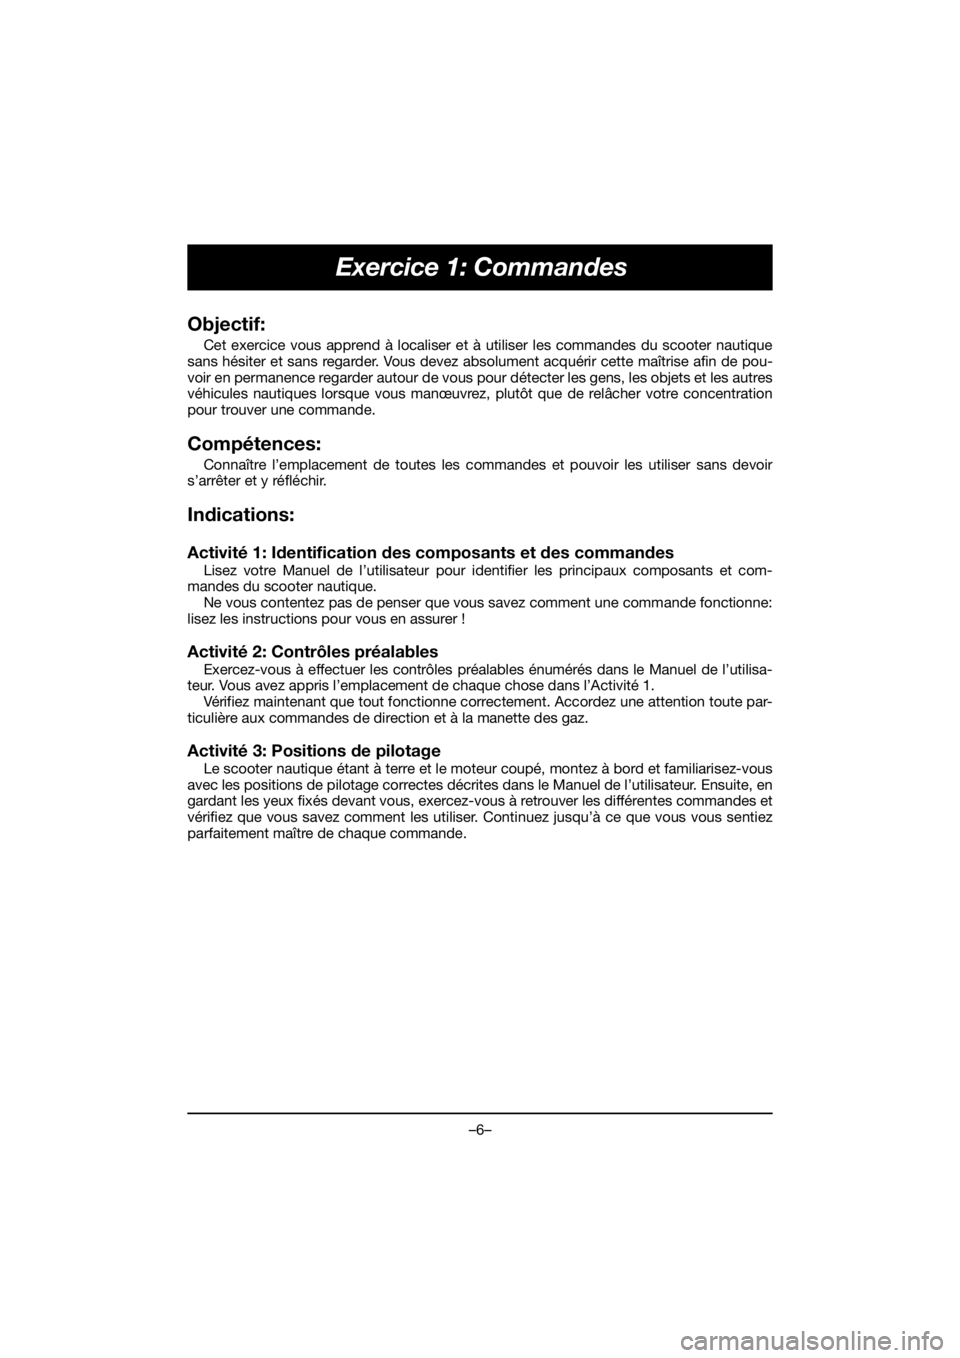 YAMAHA EX SPORT 2019  Manuale de Empleo (in Spanish) –6–
Exercice 1: Commandes
Objectif:
Cet exercice vous apprend à localiser et à utiliser les commandes du scooter nautique
sans hésiter et sans regarder. Vous devez absolument acquérir cette ma